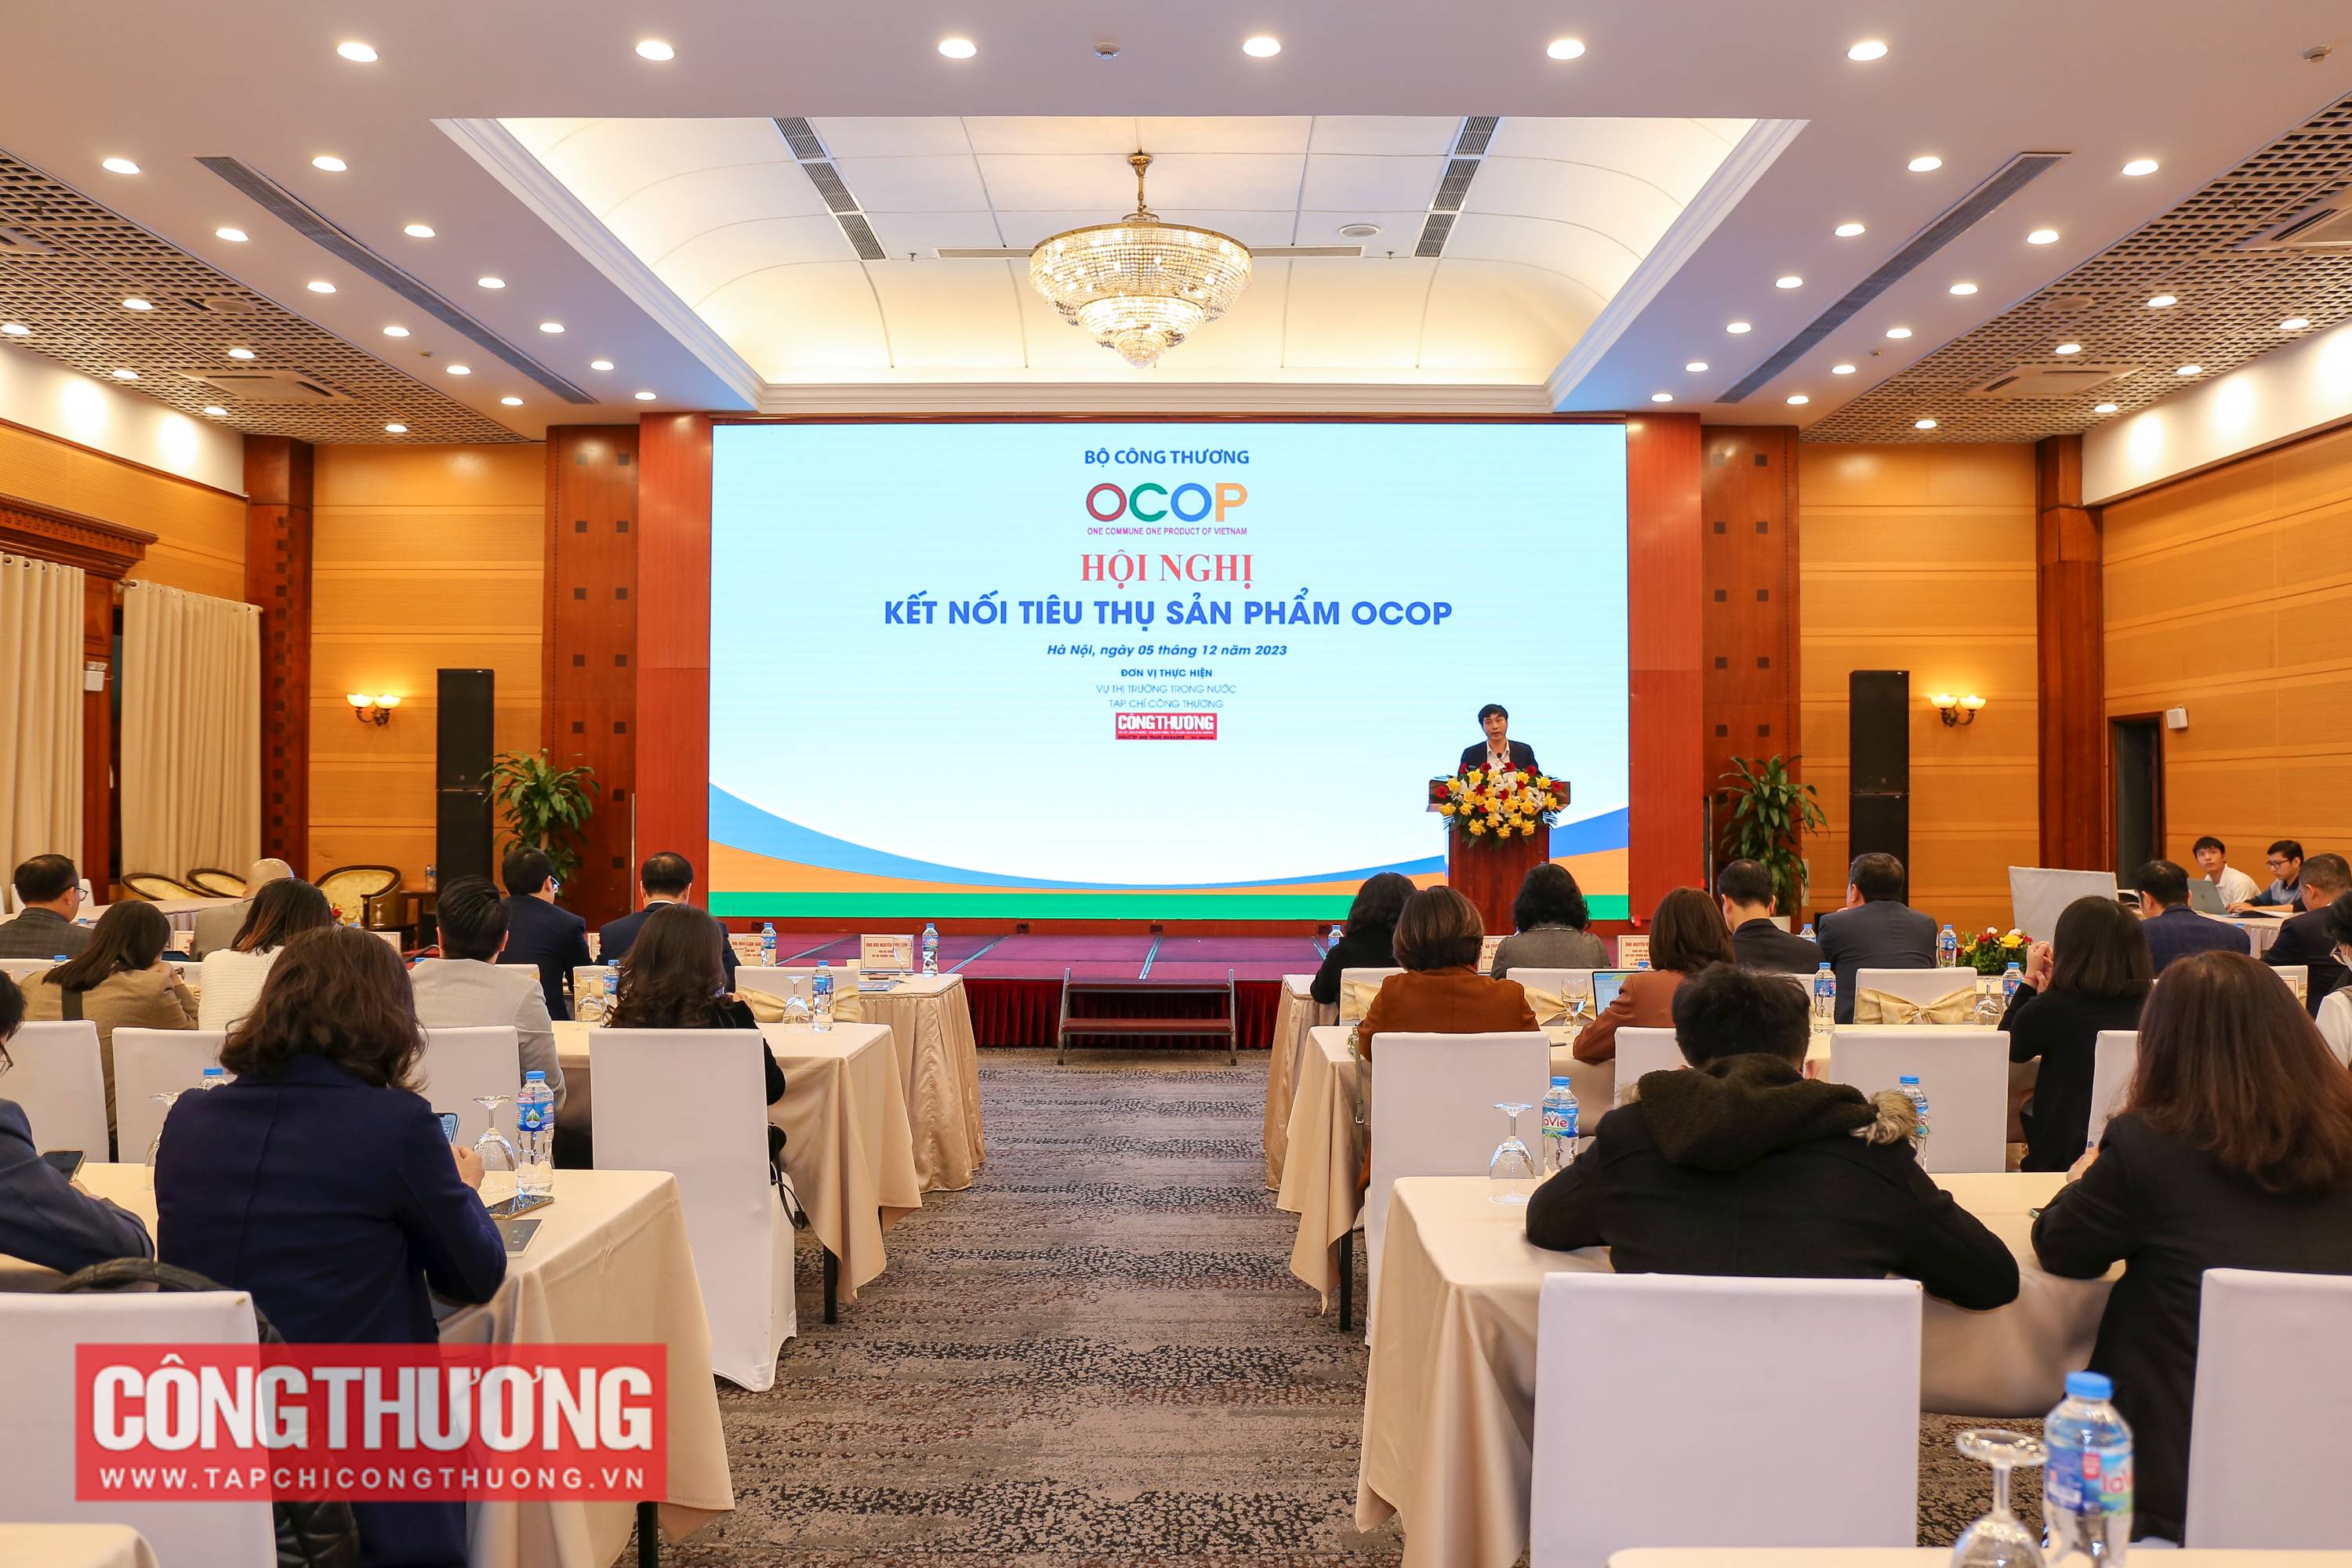 Hội nghị "Kết nối tiêu thụ sản phẩm OCOP"